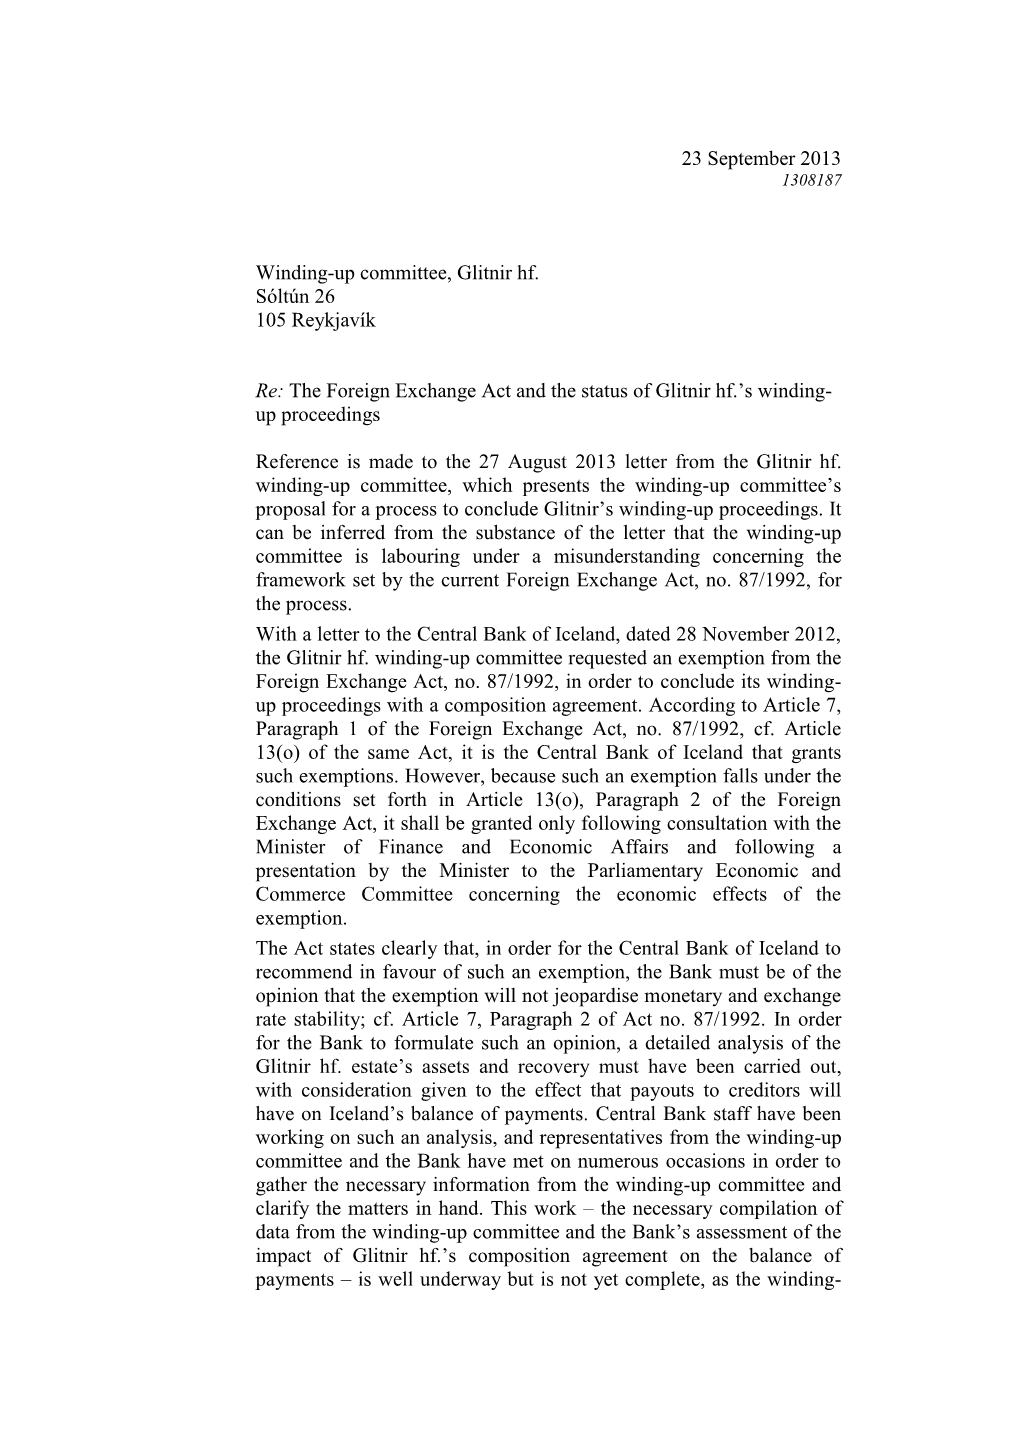 Letter to Glitnir Hf. 23 September 2013